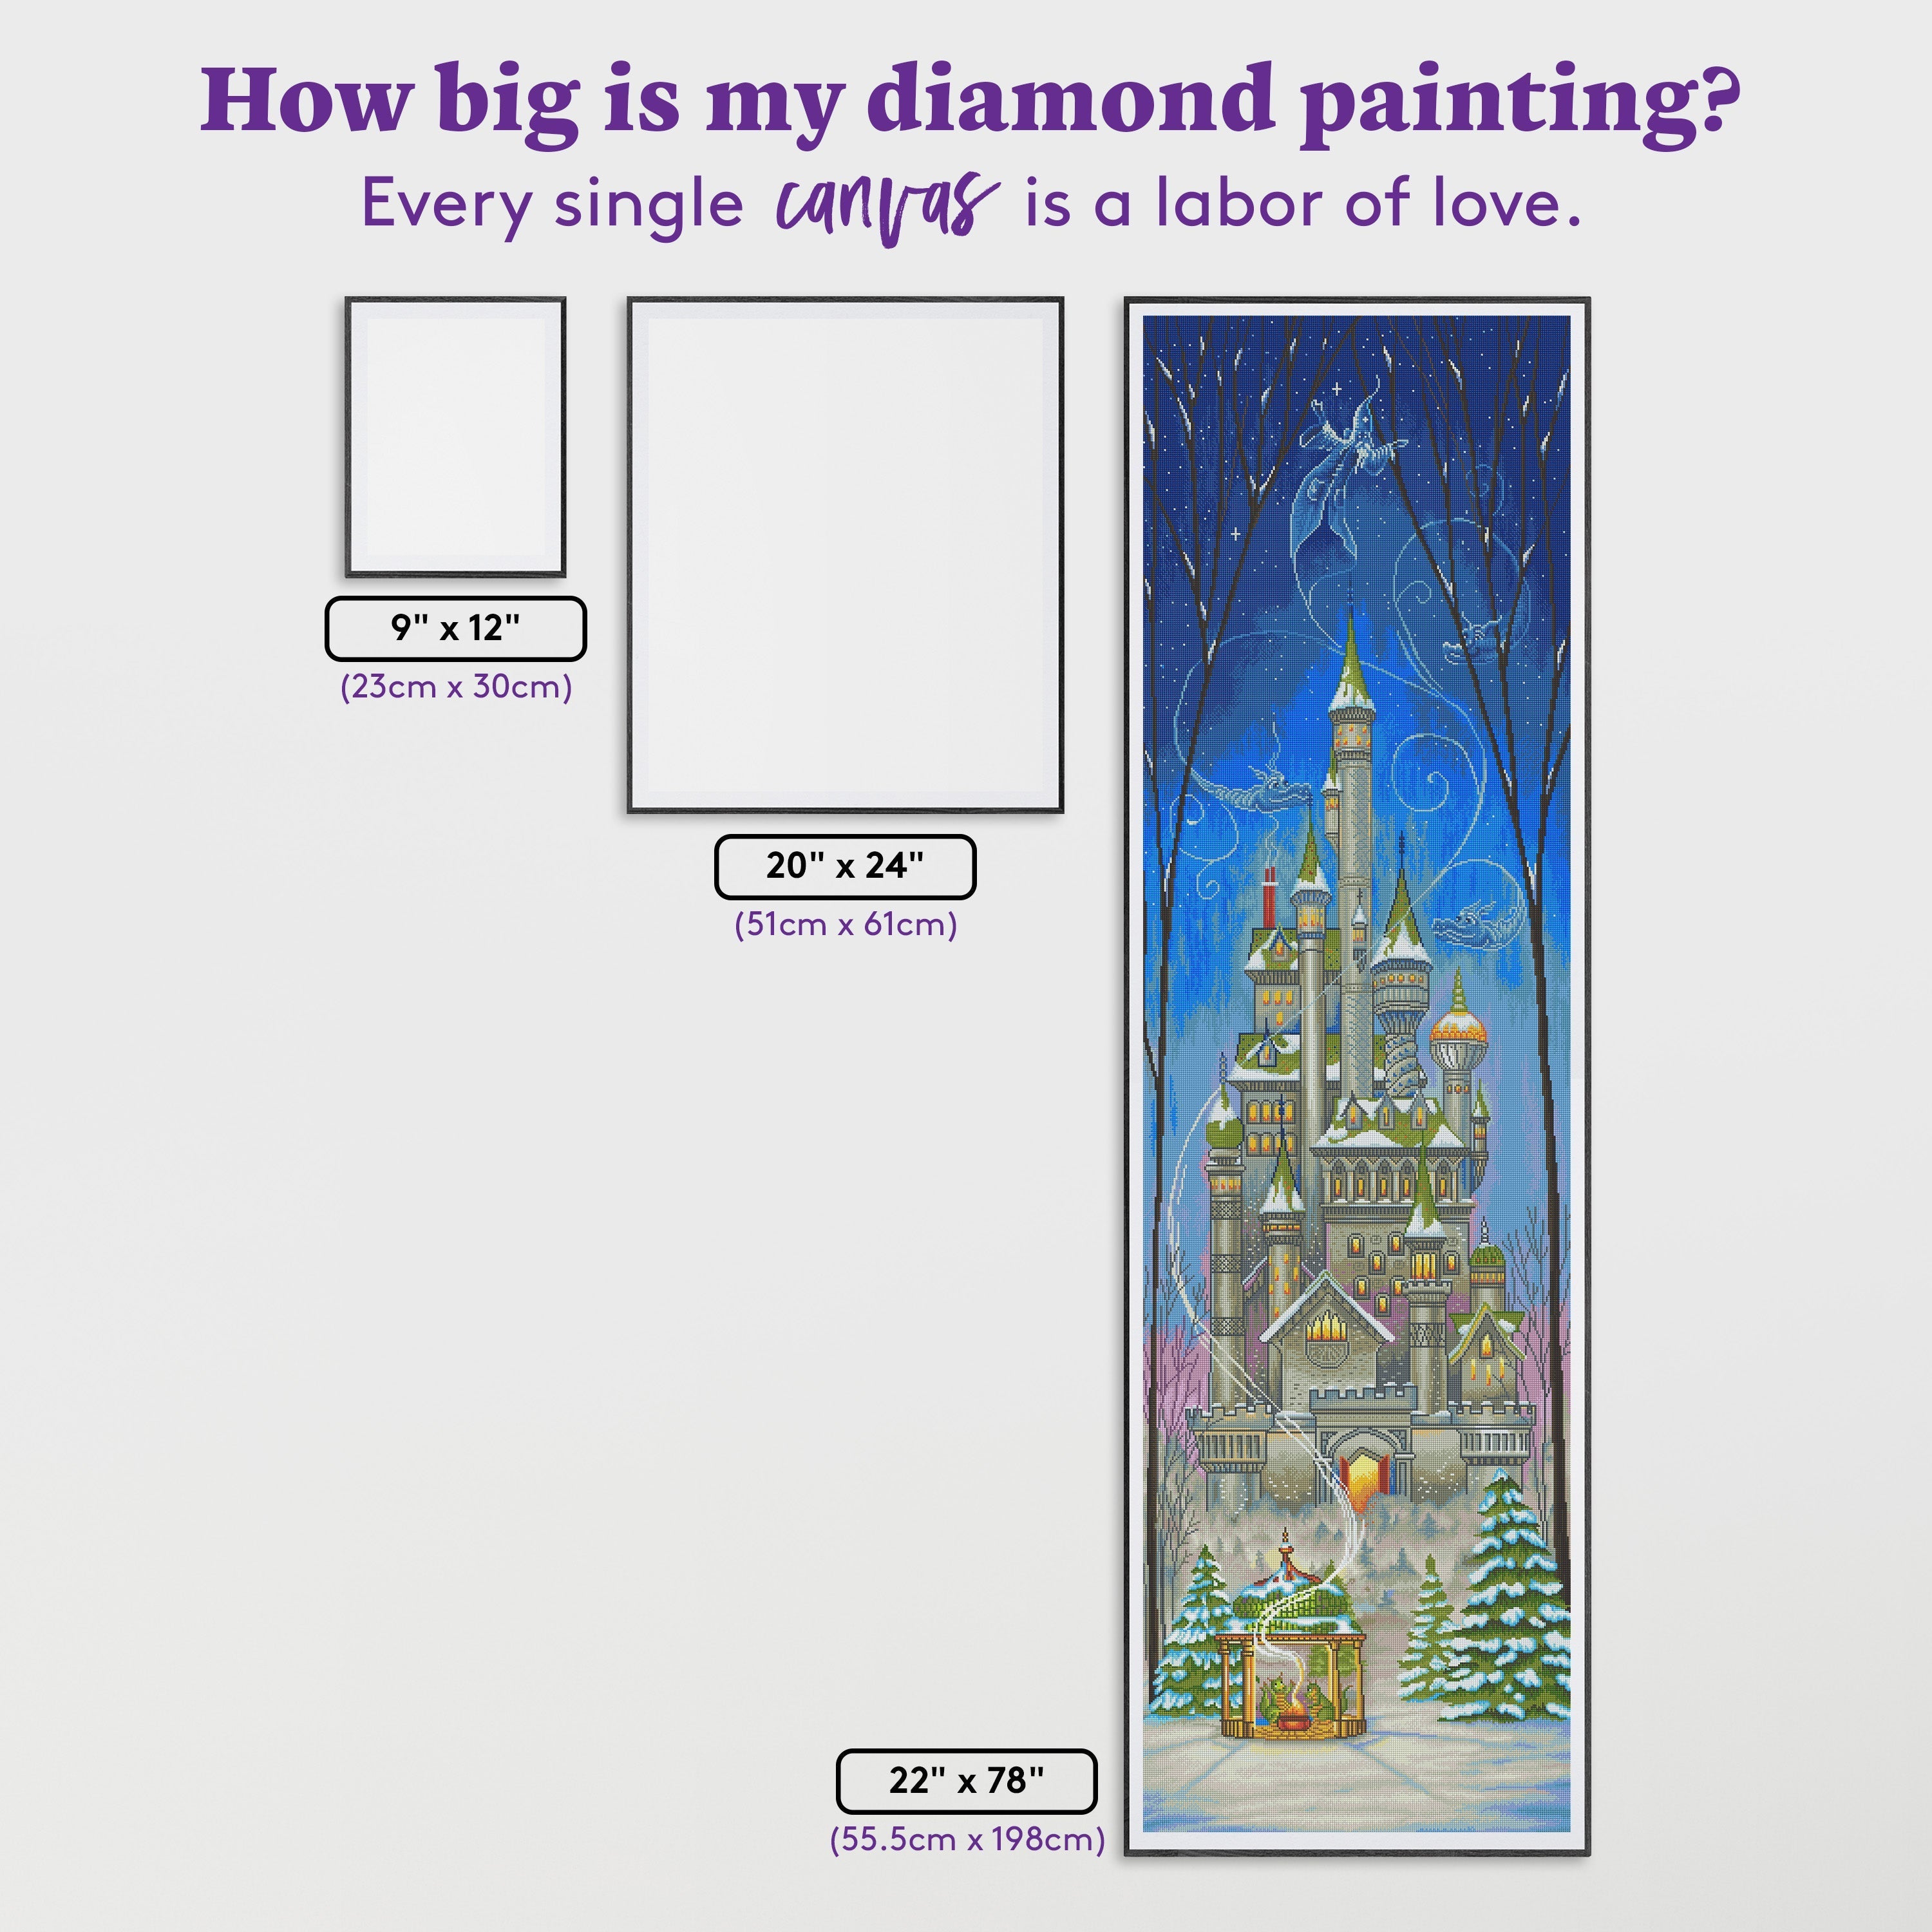 FAIRYTALE DISNEY CASTLE Diamond Painting Kit